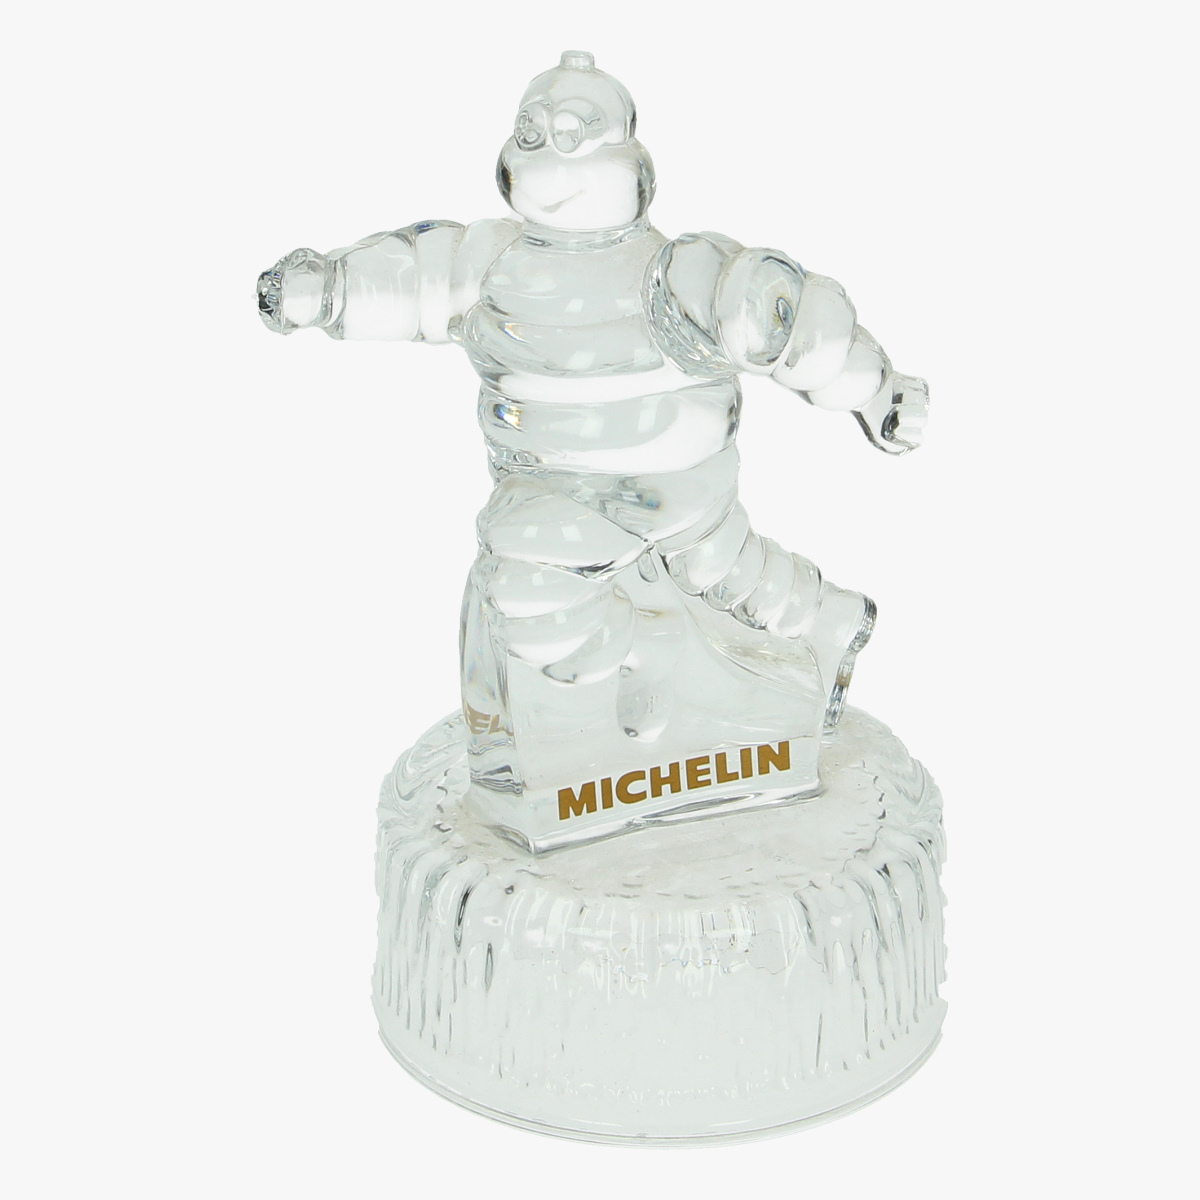 Afbeeldingen van Michelin Beeld in glas. Trofee.